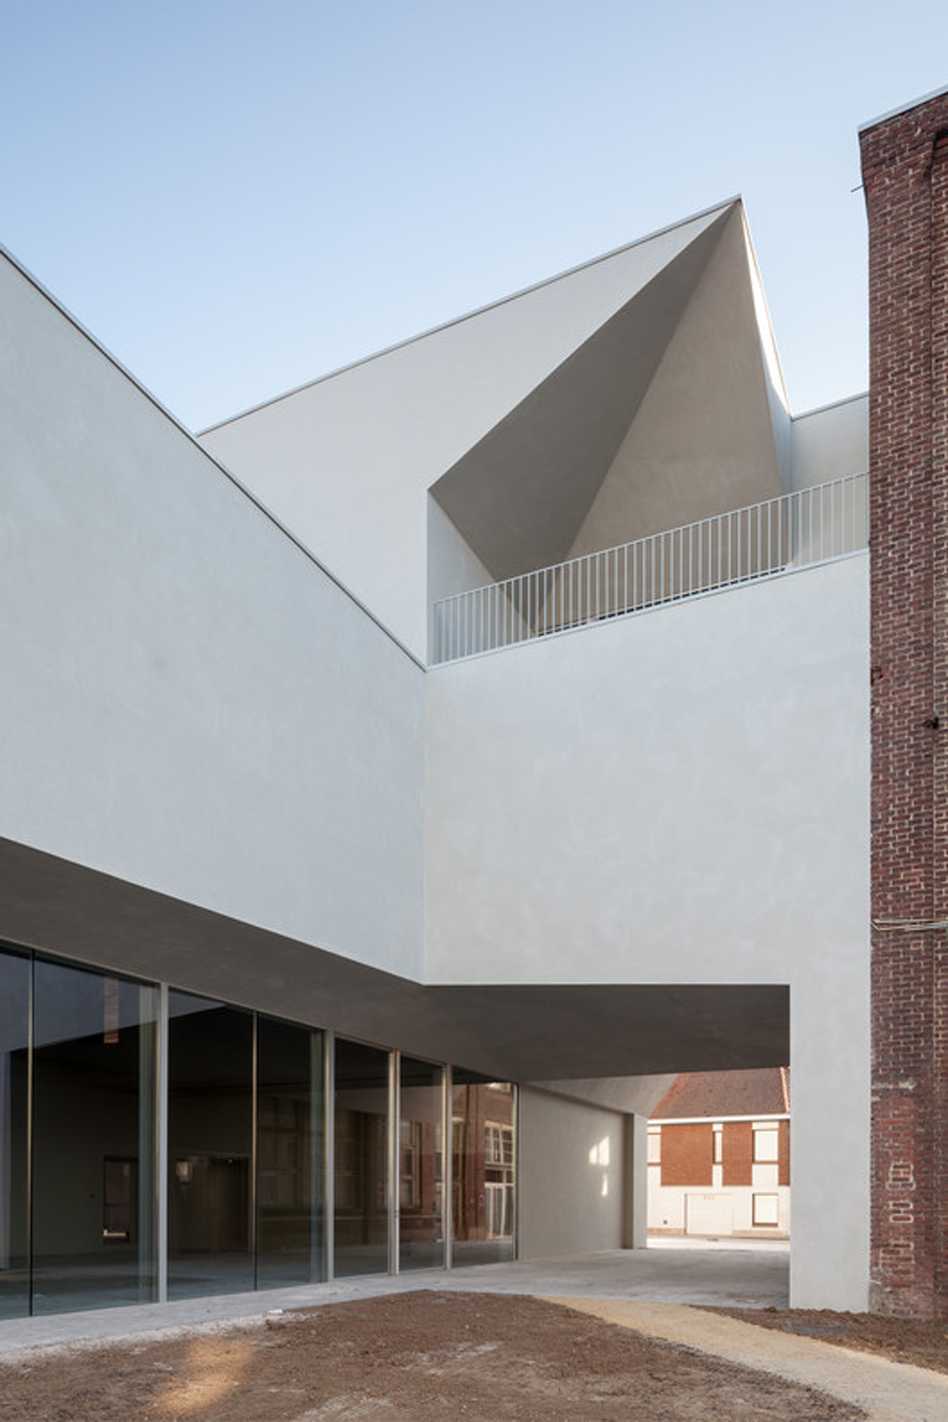 Numero immagine 33 della sezione corrente di Architecture School in Tournai di Cosentino Italia